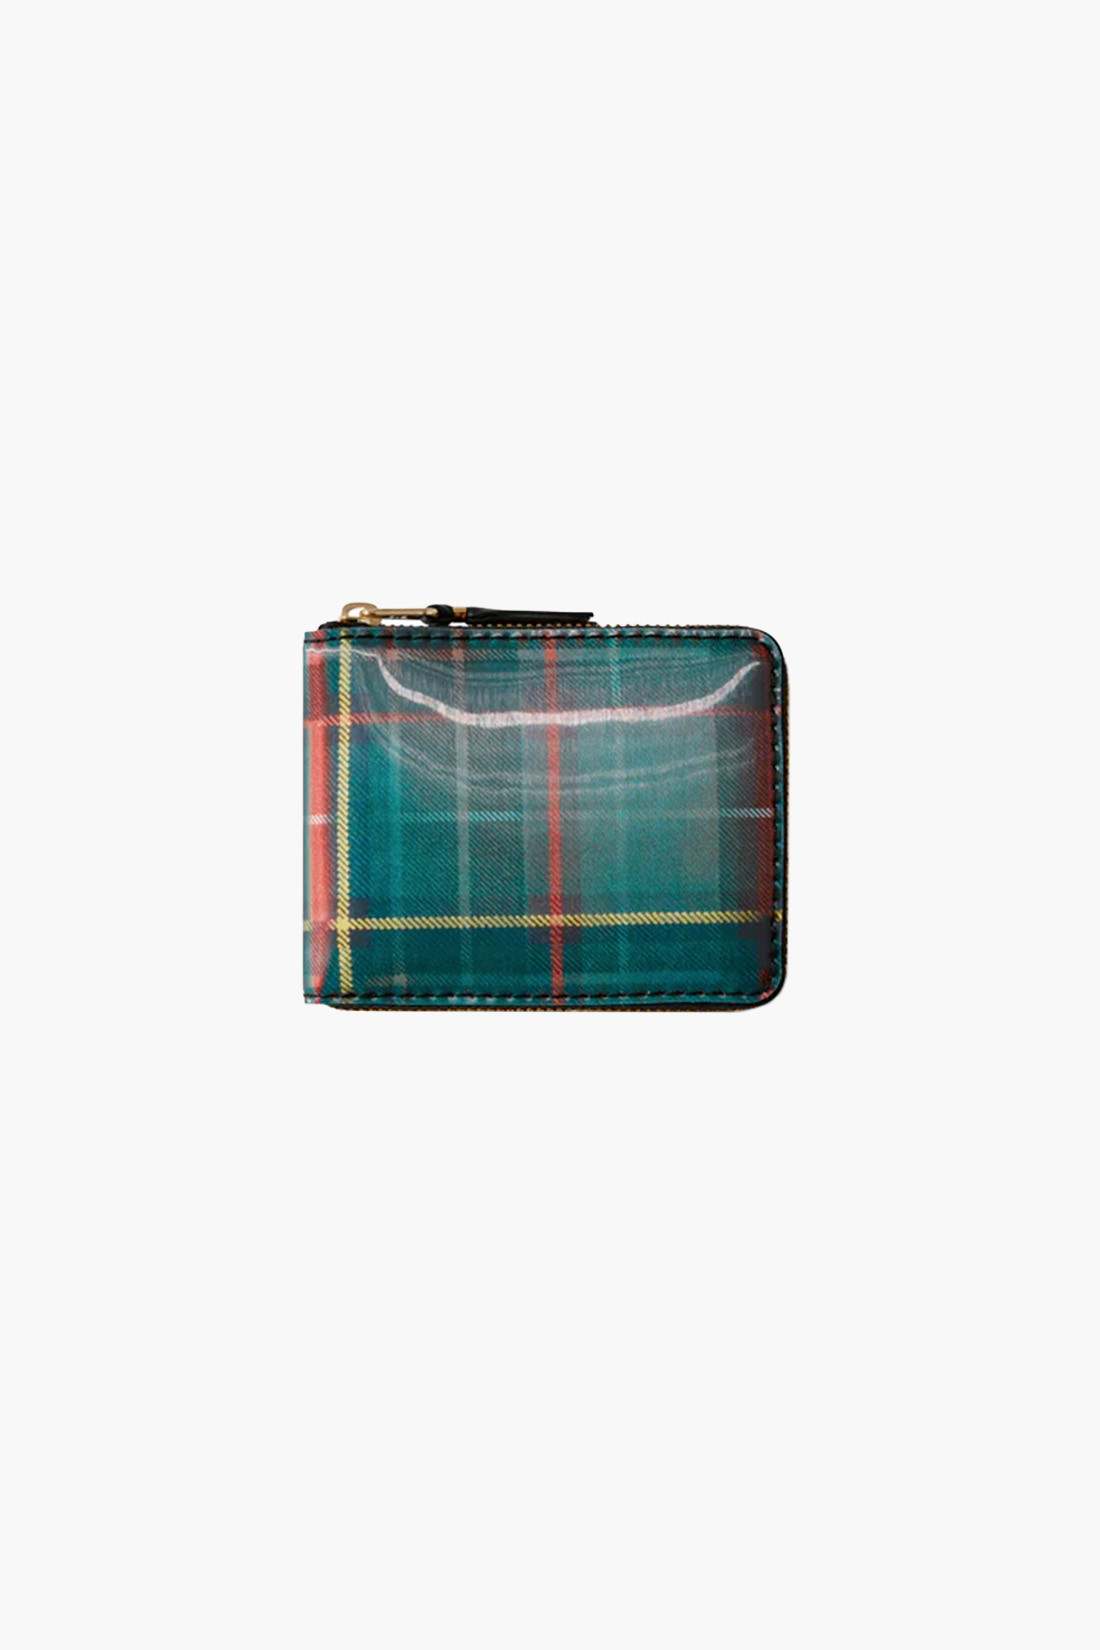 Cdg wallet lenticular tartan Red/ green